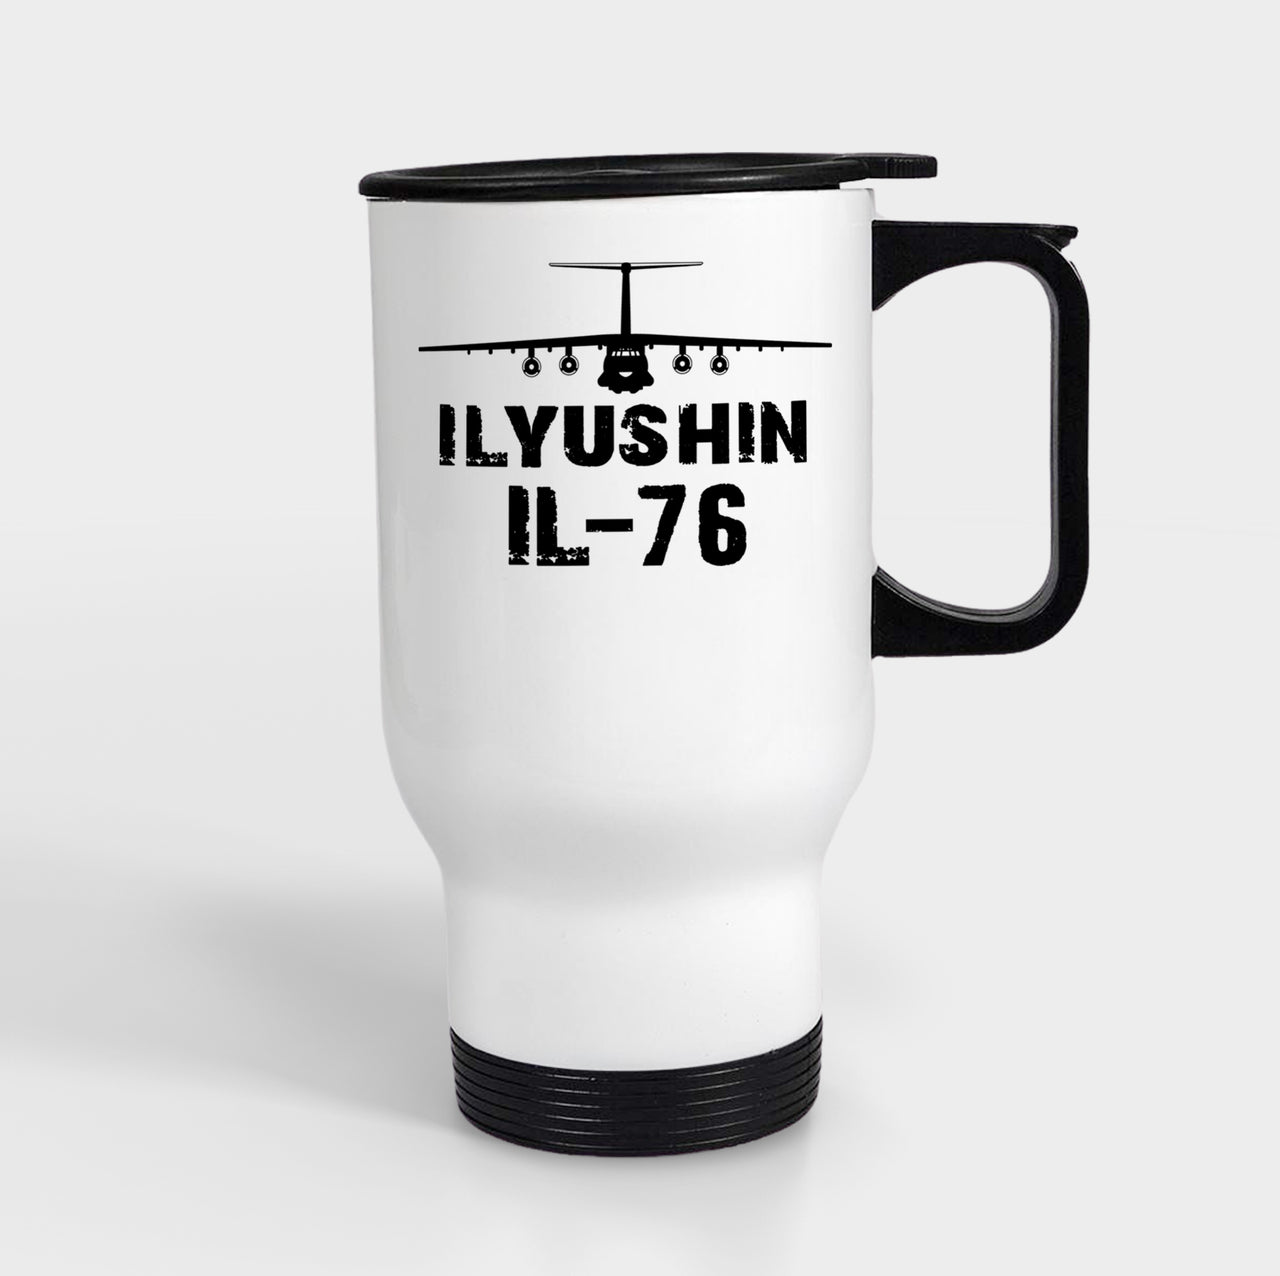 ILyushin IL-76 & Plane Designed Travel Mugs (With Holder)